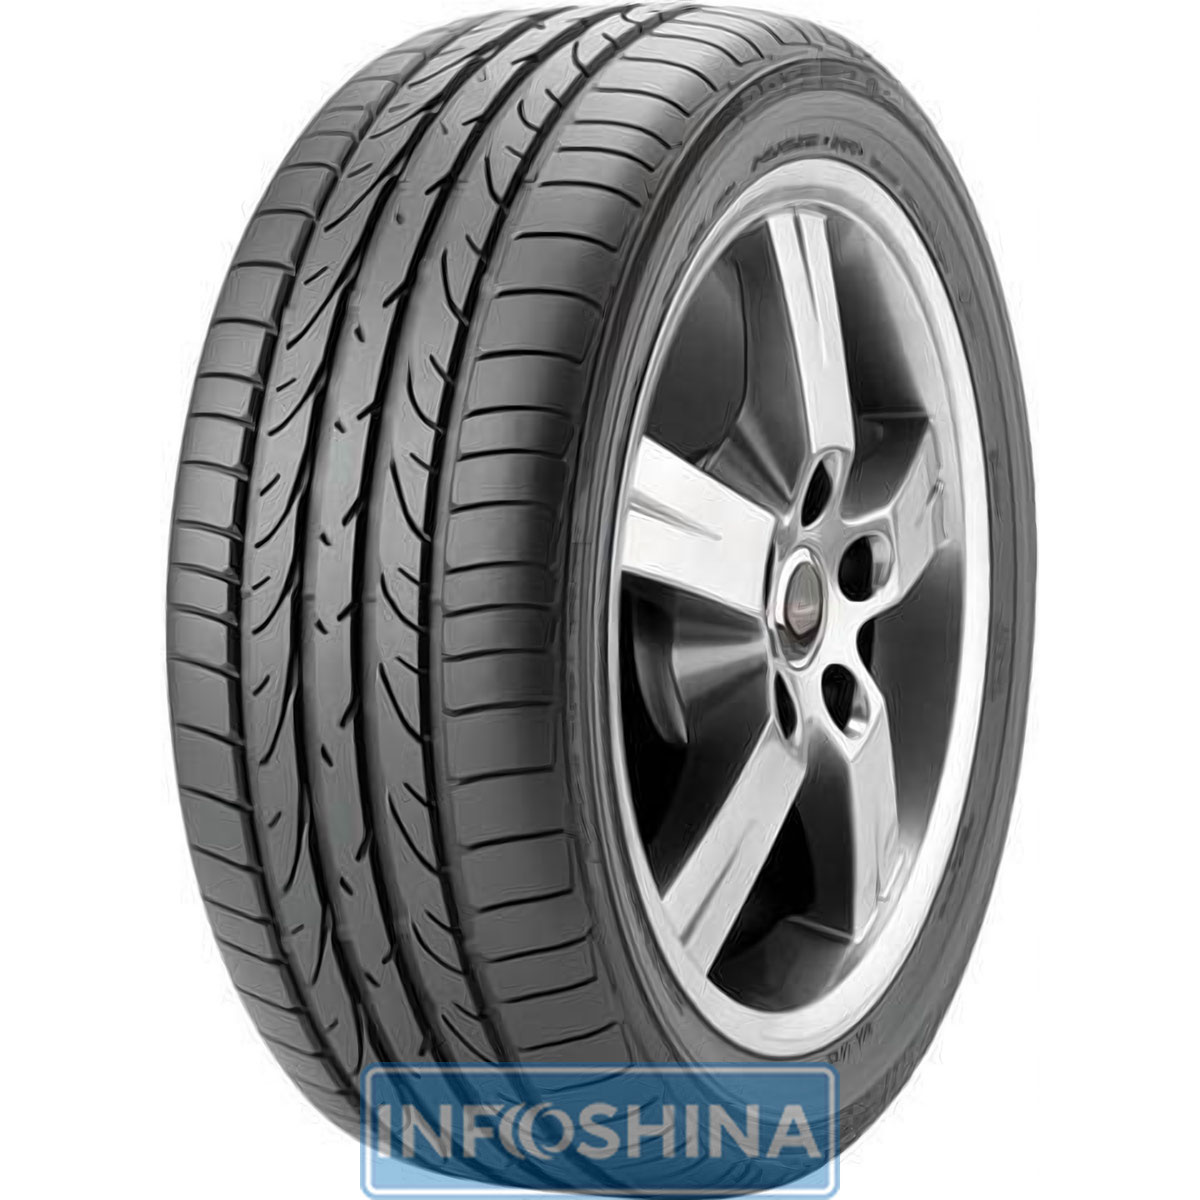 Купить шины Bridgestone Potenza RE050 255/35 R18 90Y Run Flat